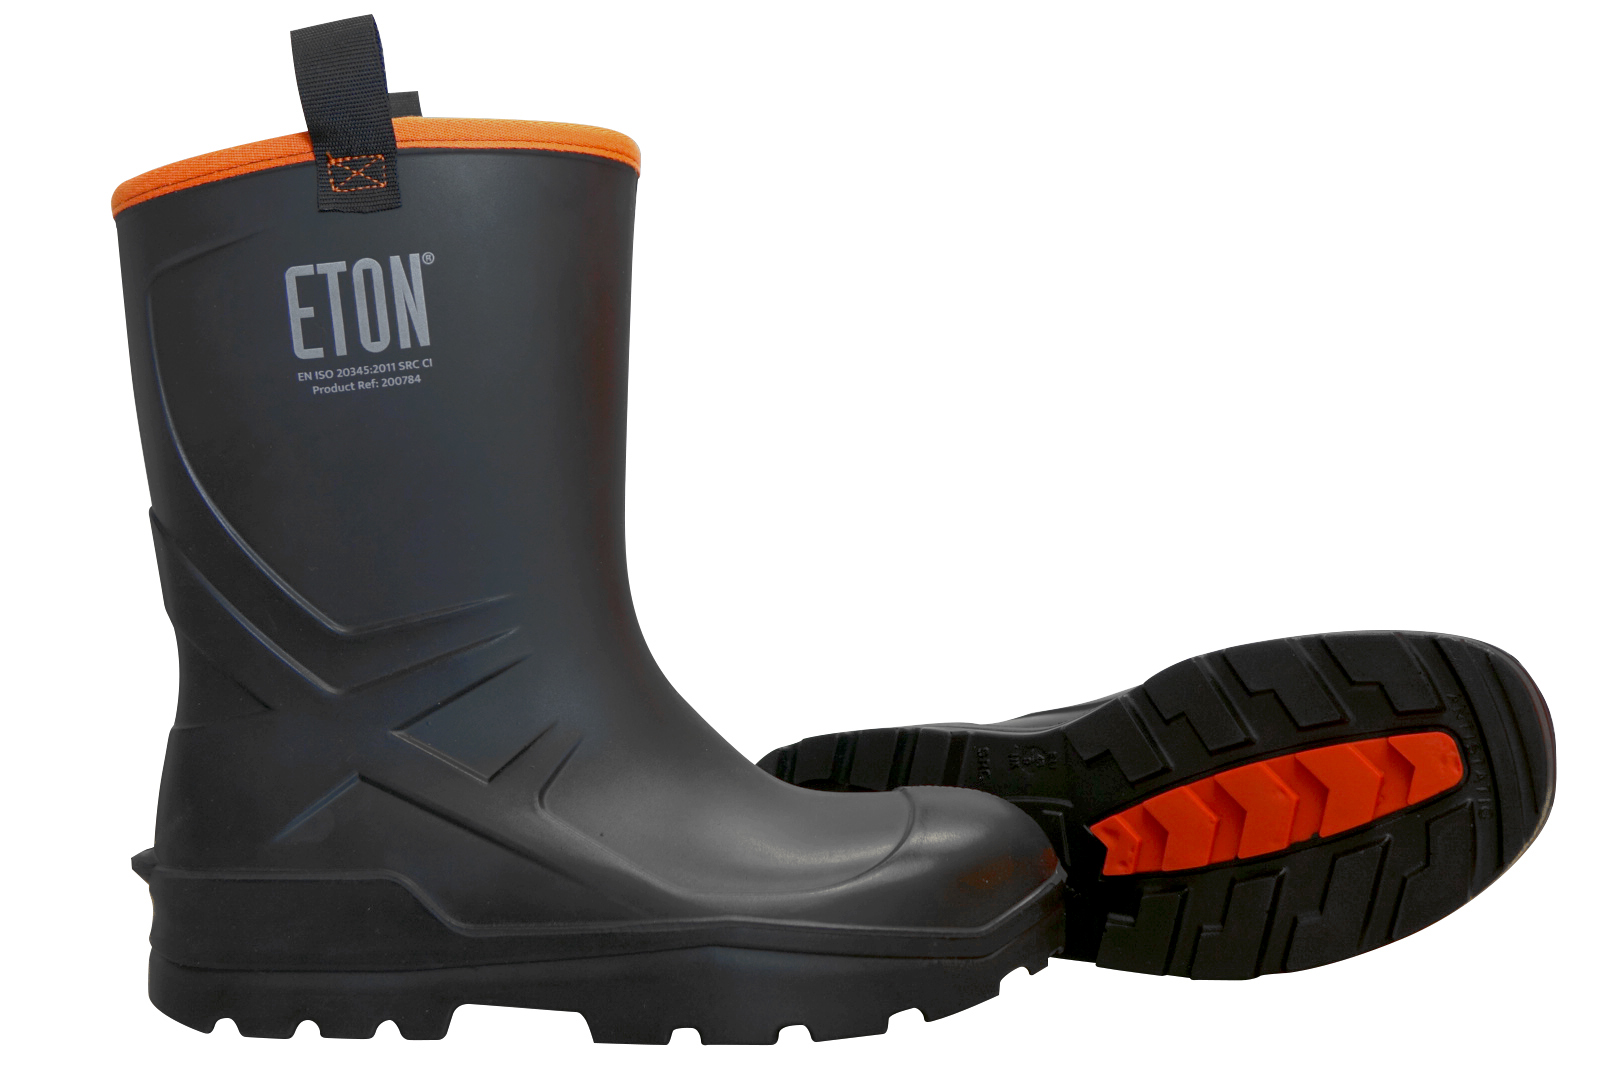 ETON DuraBoot Rigger Full Safety Boot - Black, Size 10